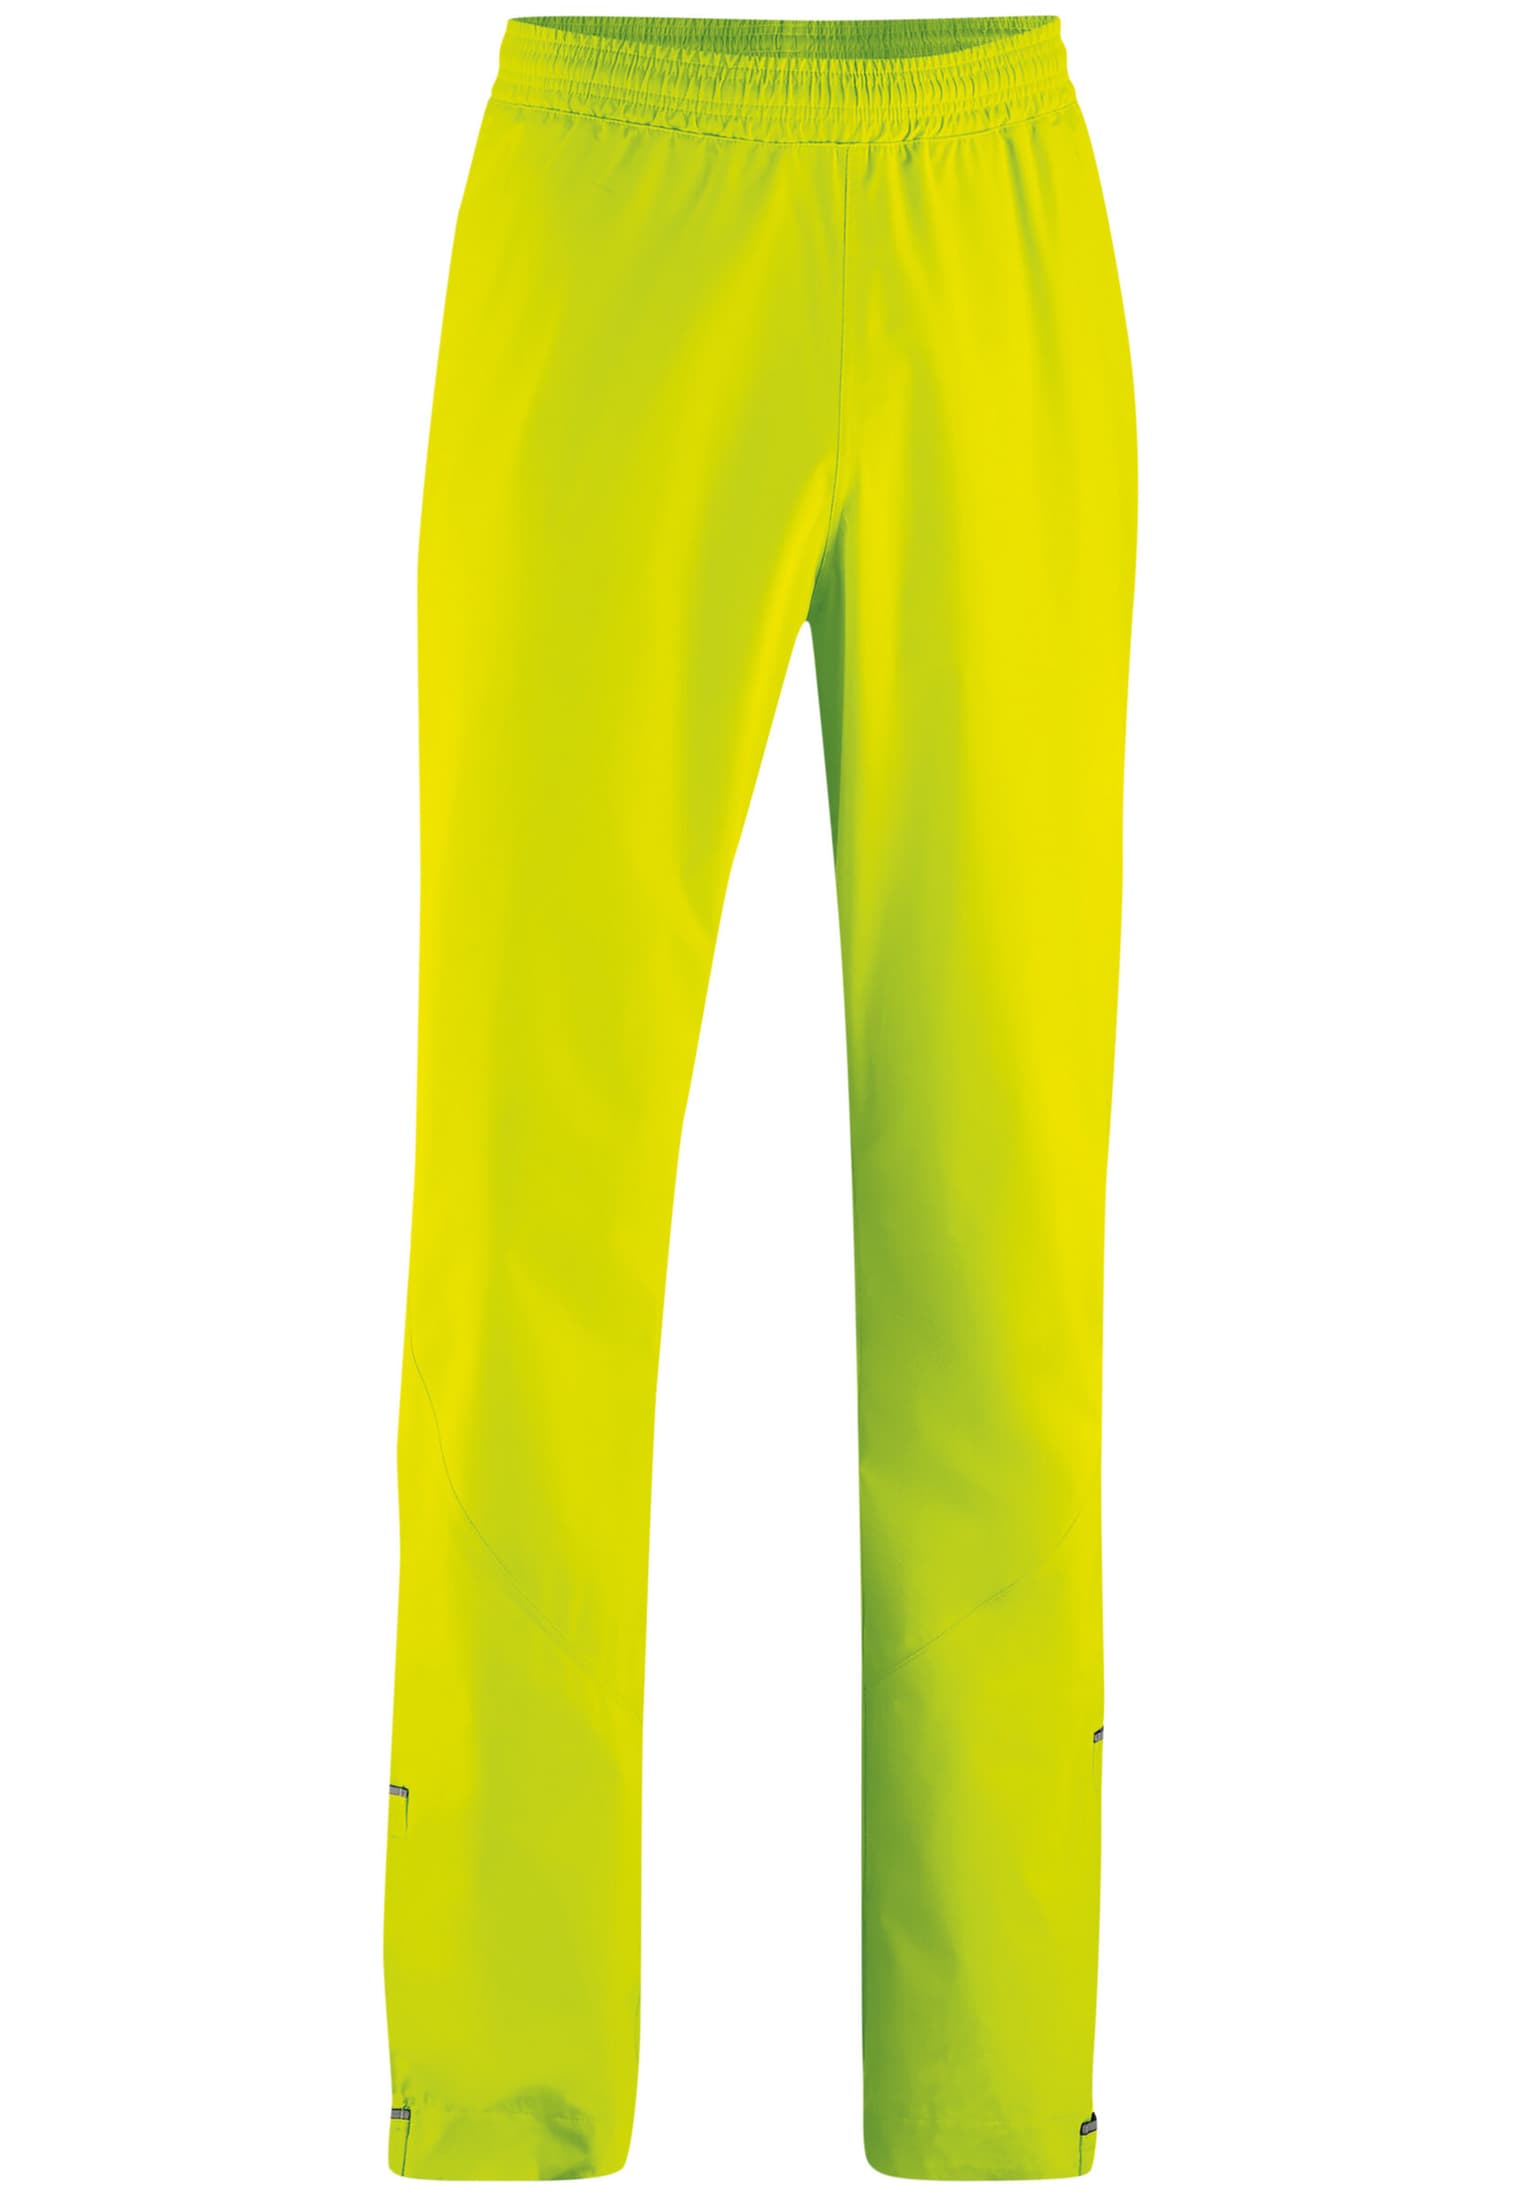 Gonso Gonso Nandro Pantaloni da bici giallo-neon 1